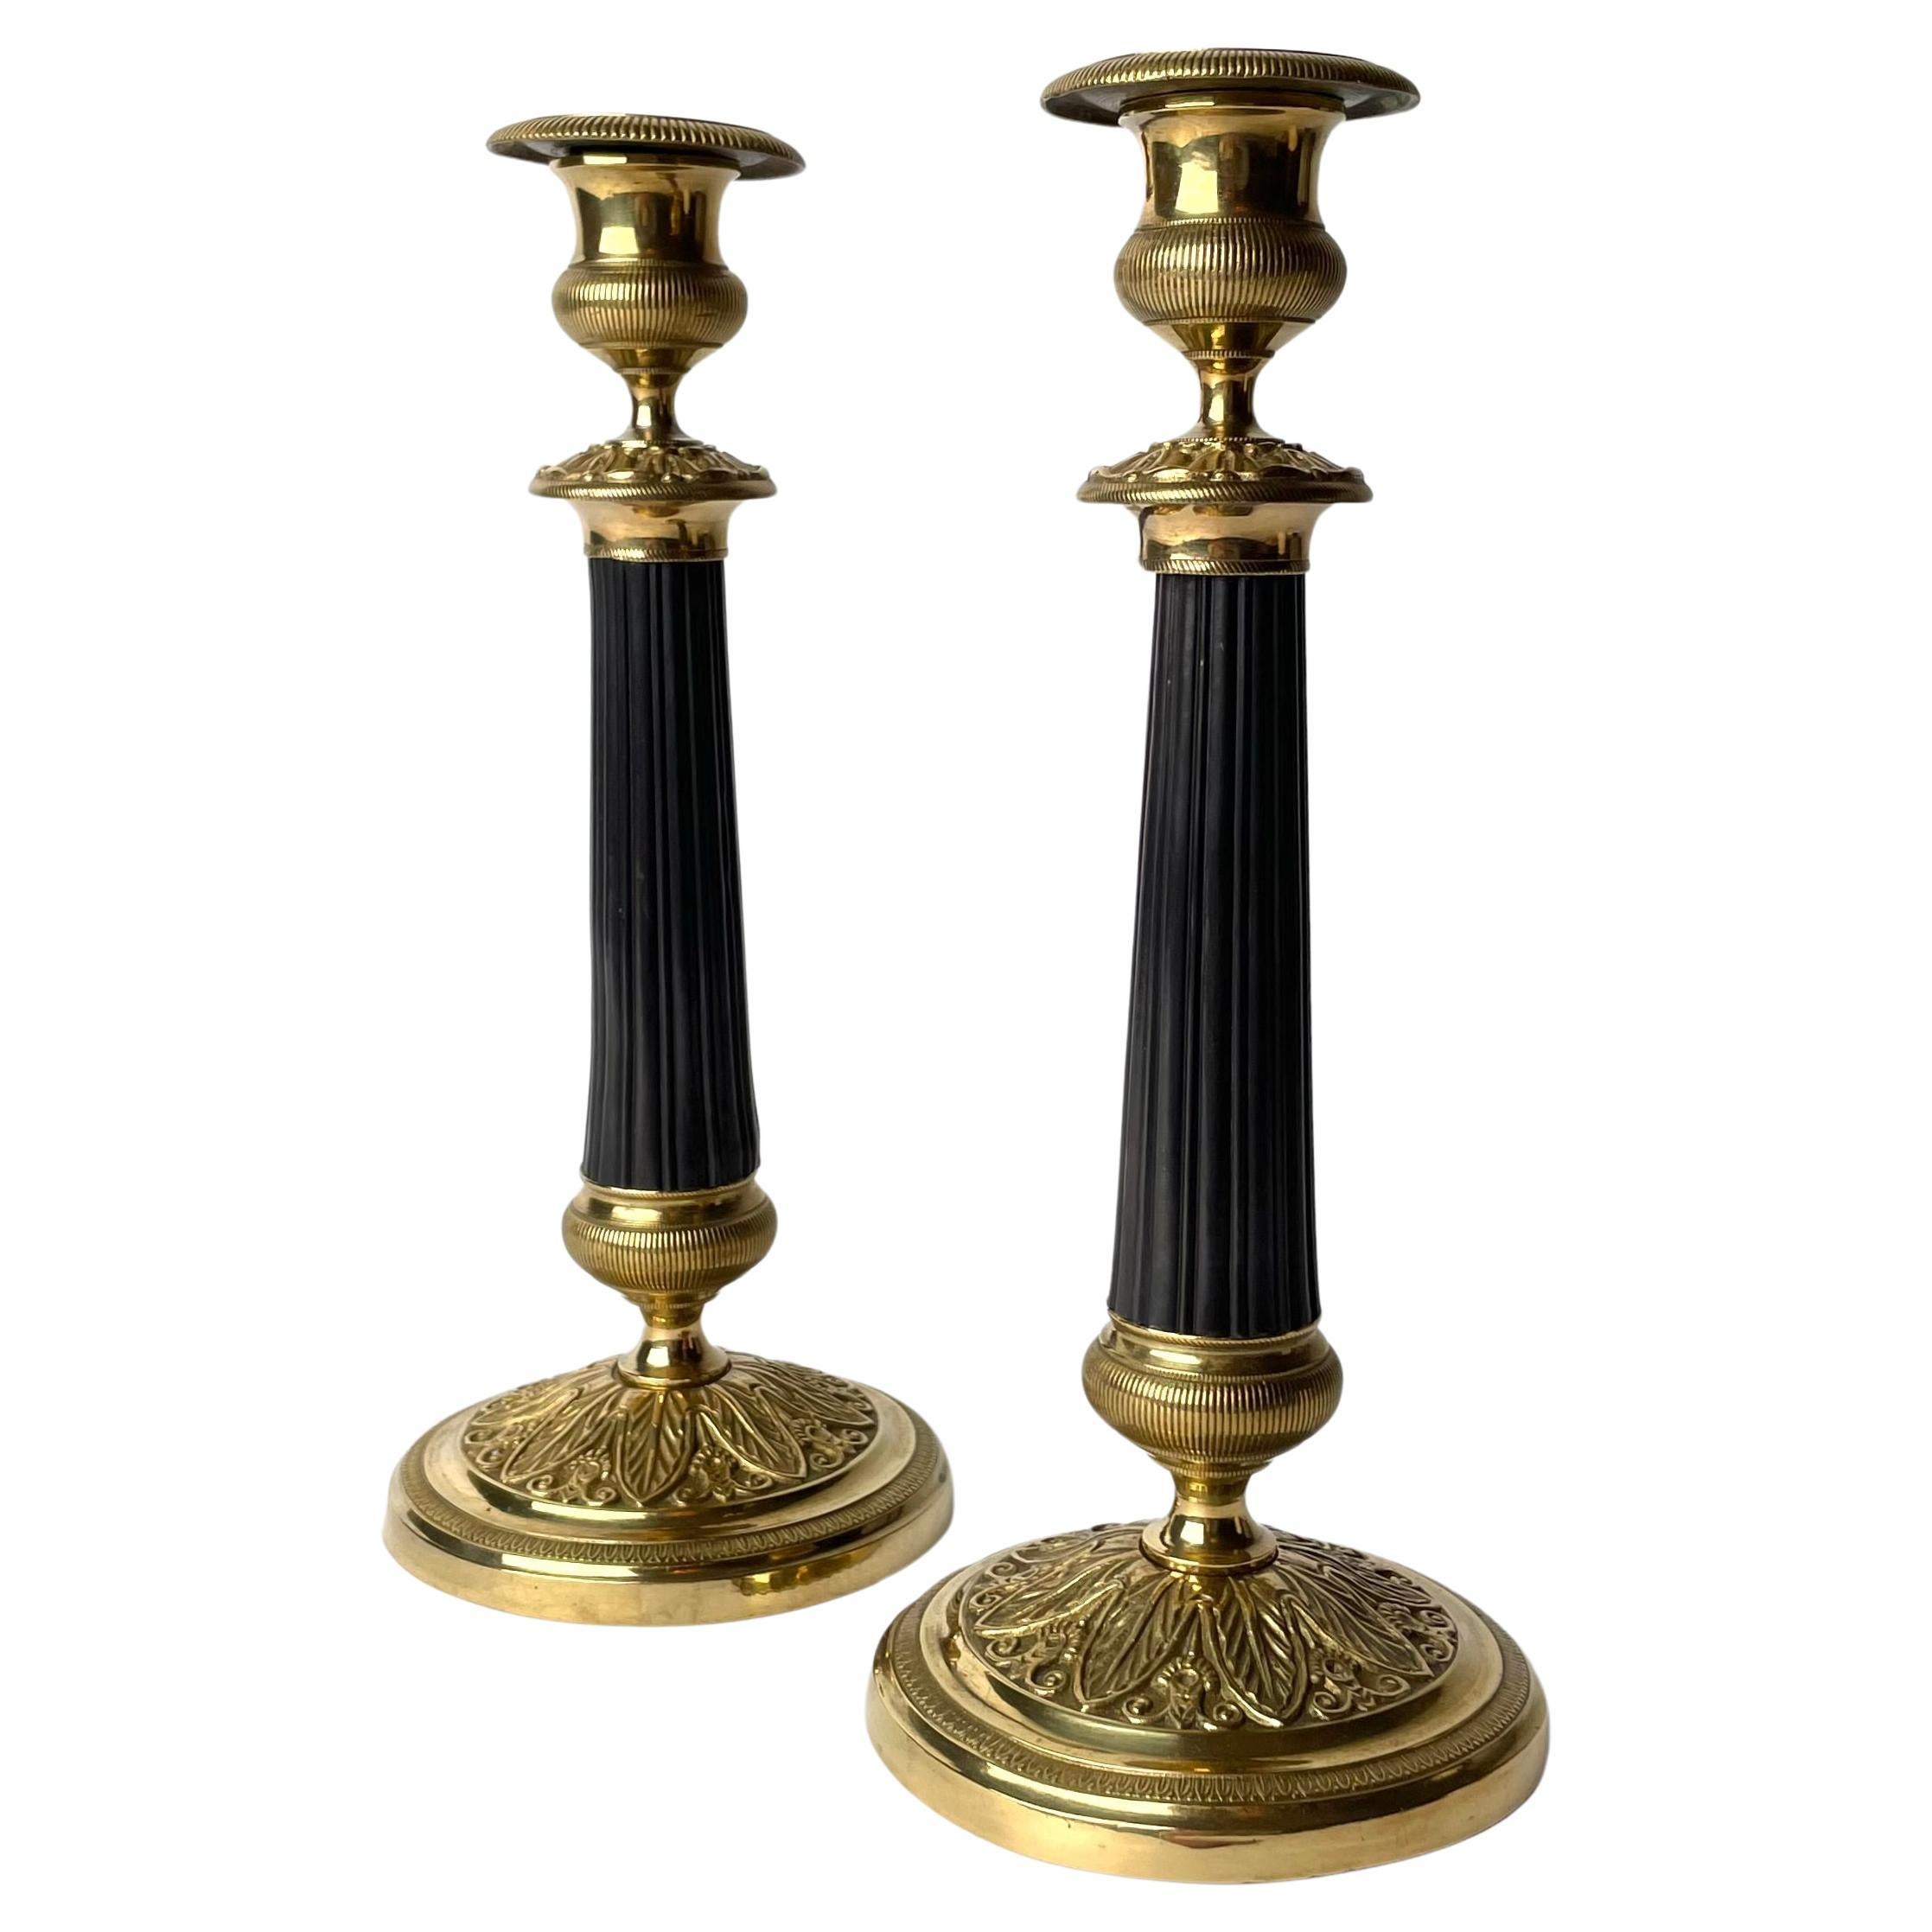 Élégante paire de chandeliers en bronze doré et patiné foncé. Empire des années 1820